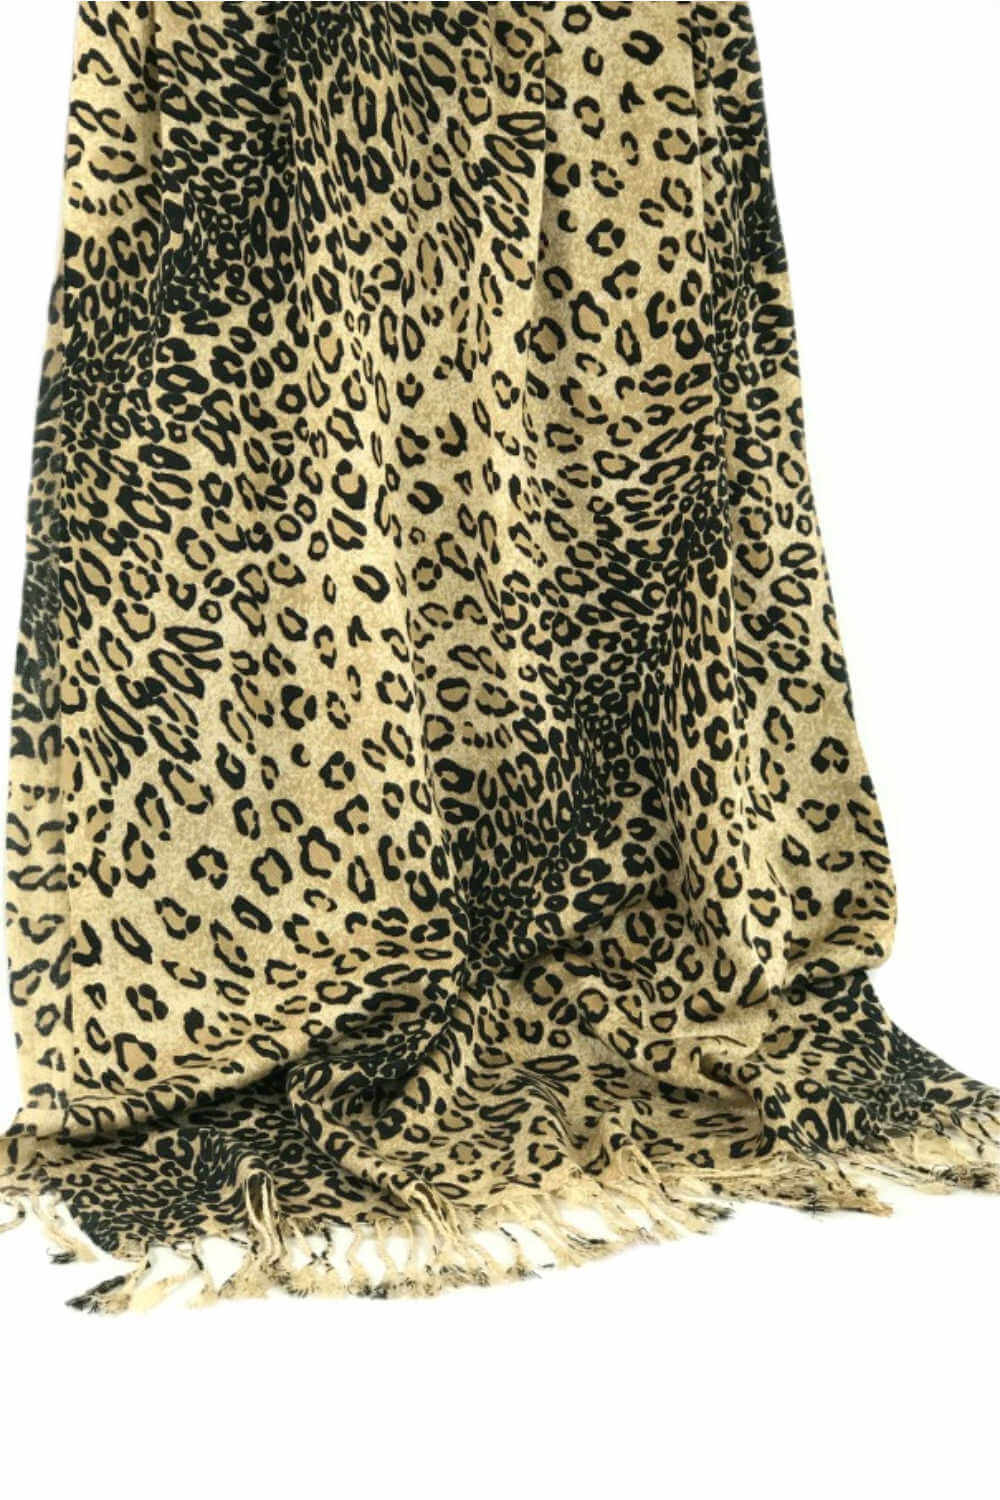 Leopard Print Winter Scarf Shawl Wrap | Holley Day